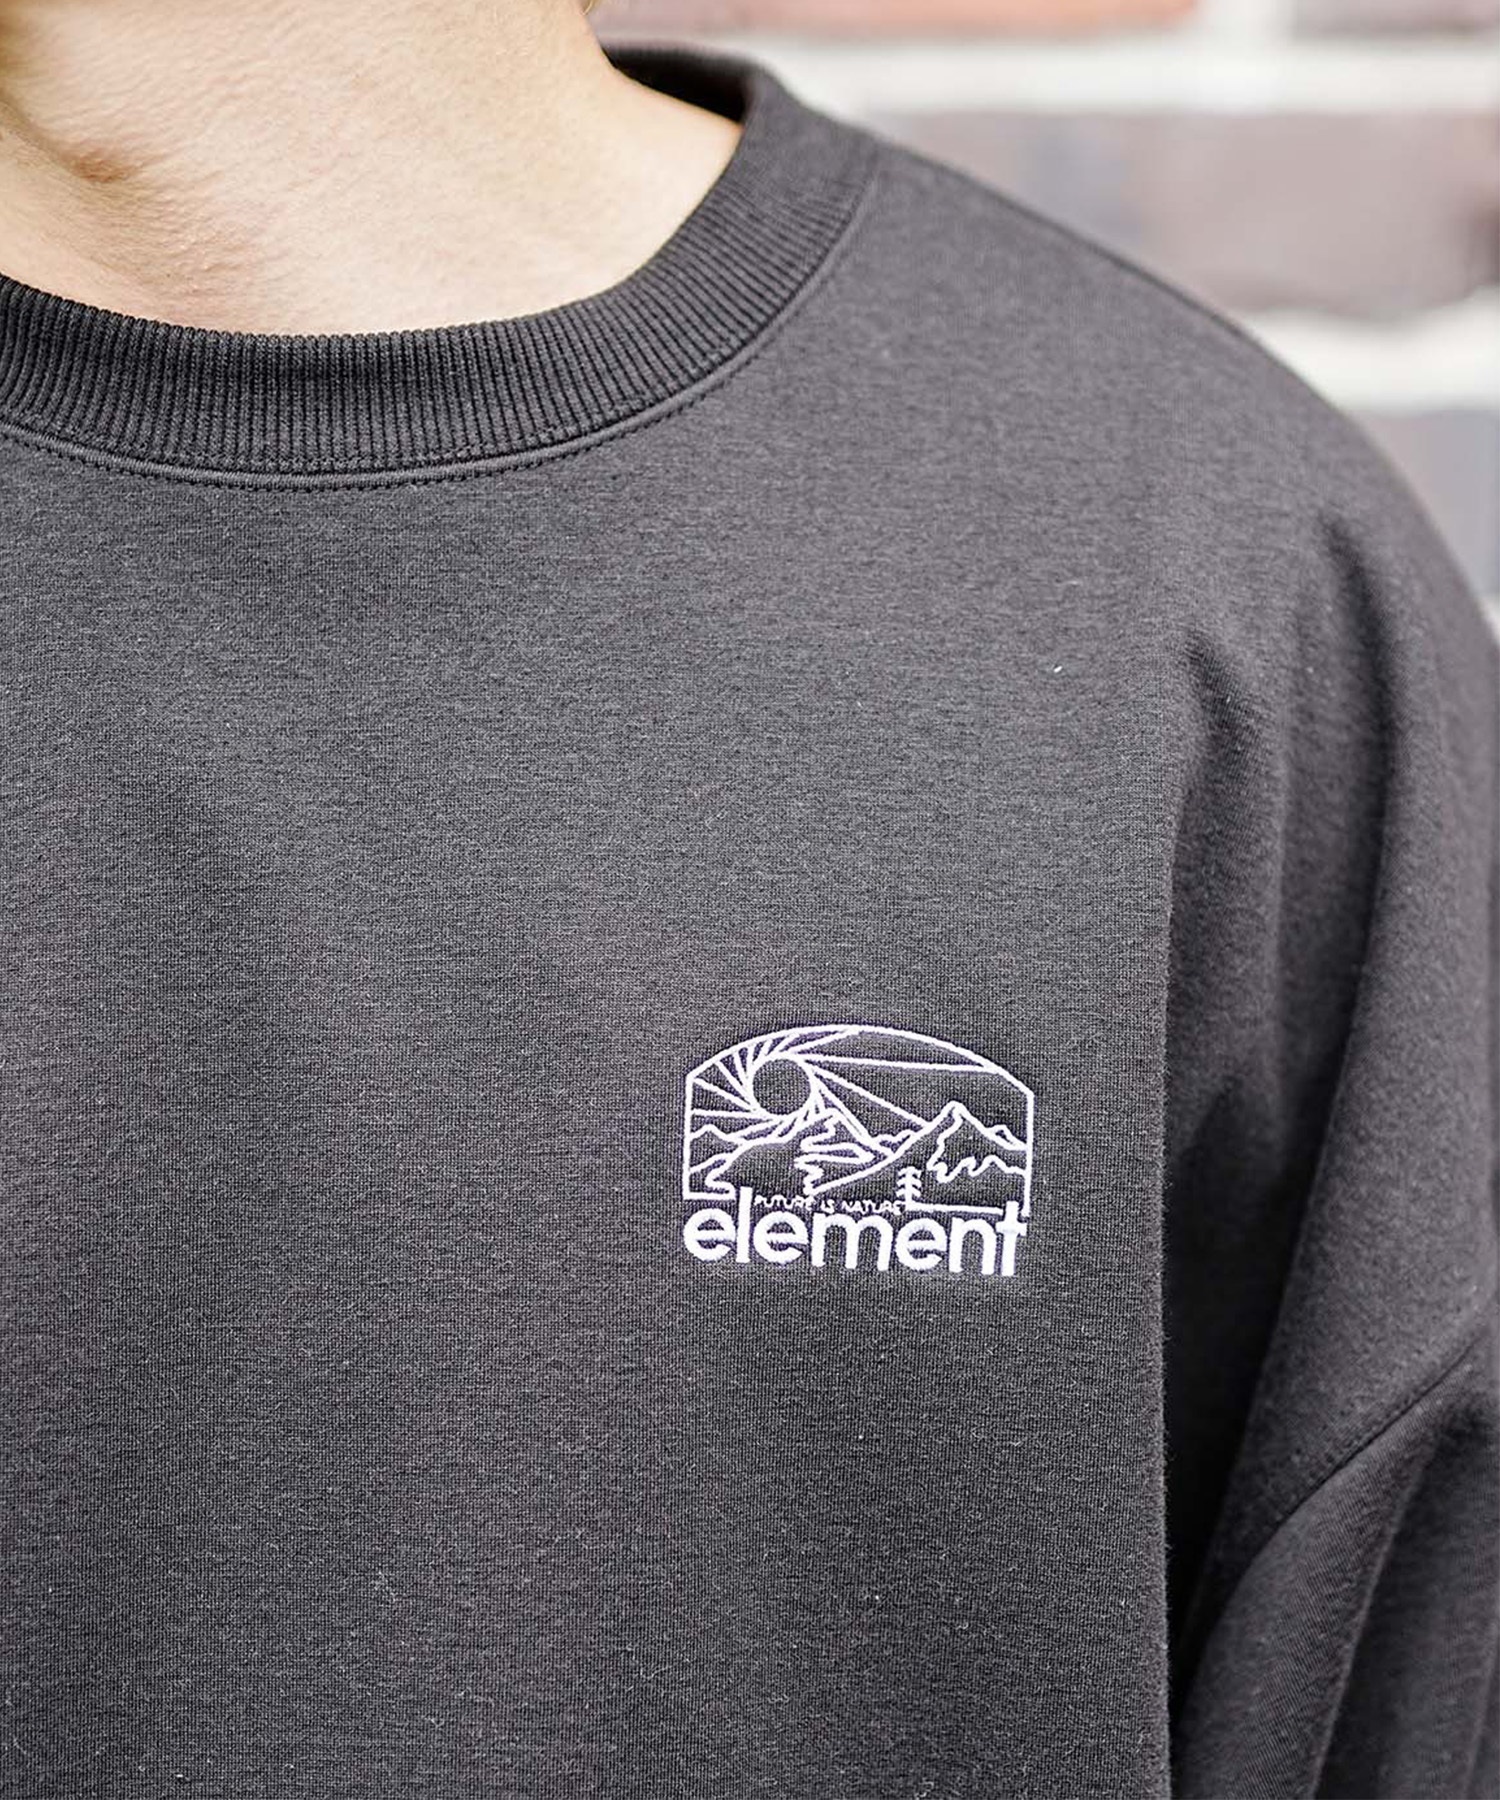 ELEMENT/エレメント SUNSET CREW WR メンズ トレーナー クルーネック